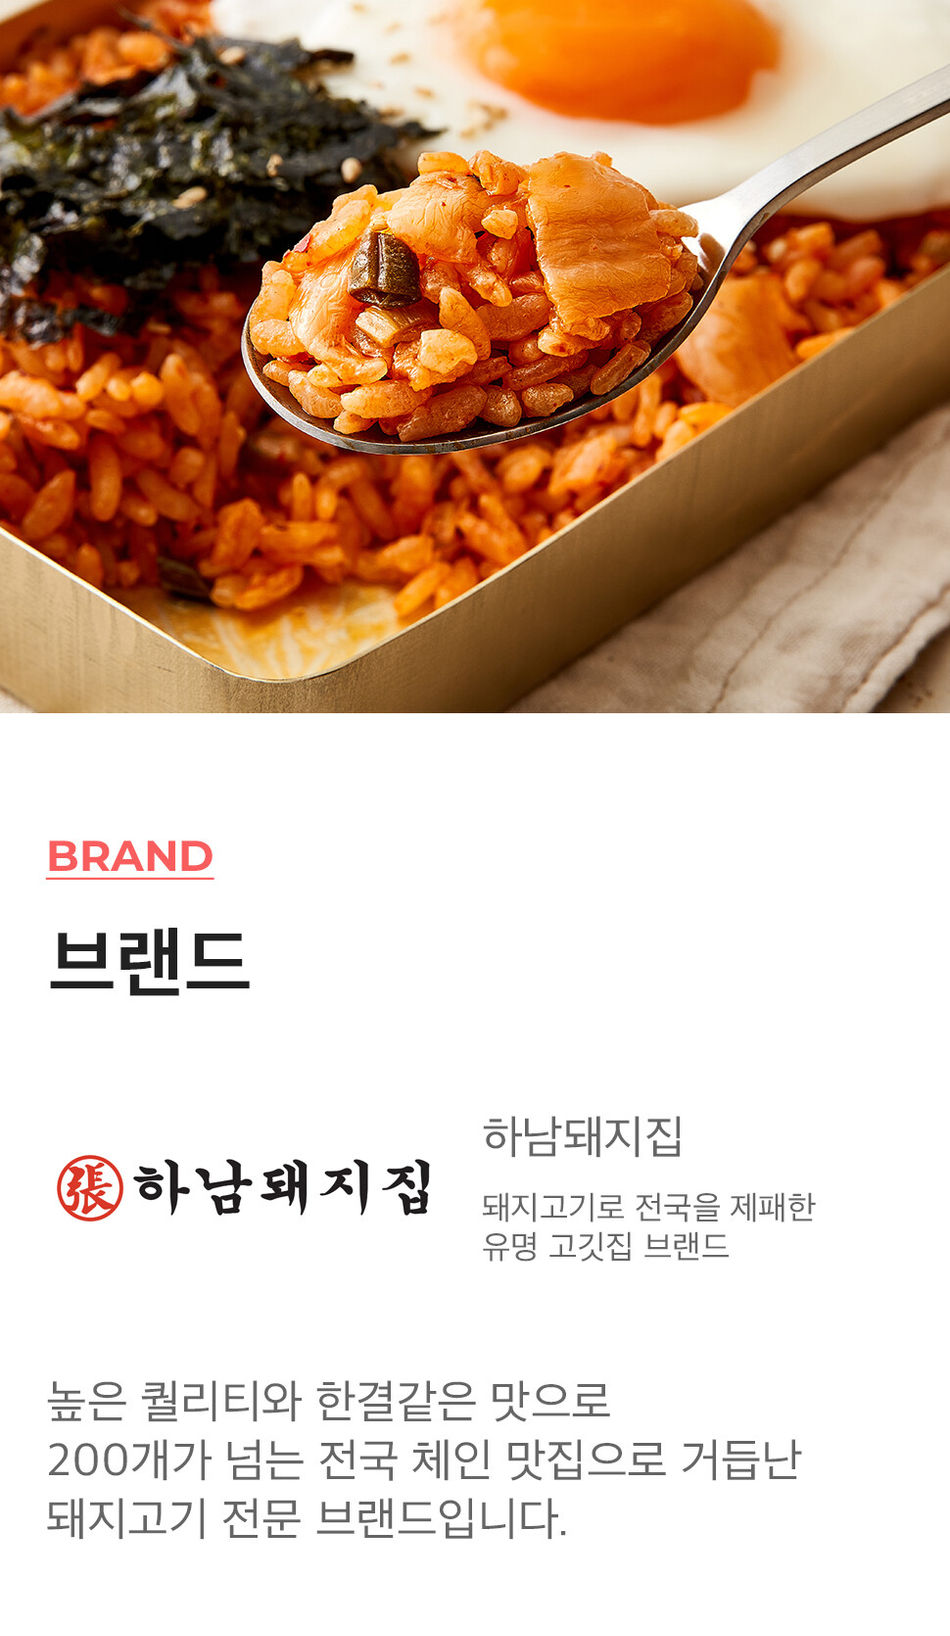 韓國食品-[Hanampig] Frozen Fried Rice with Kimchi 230g